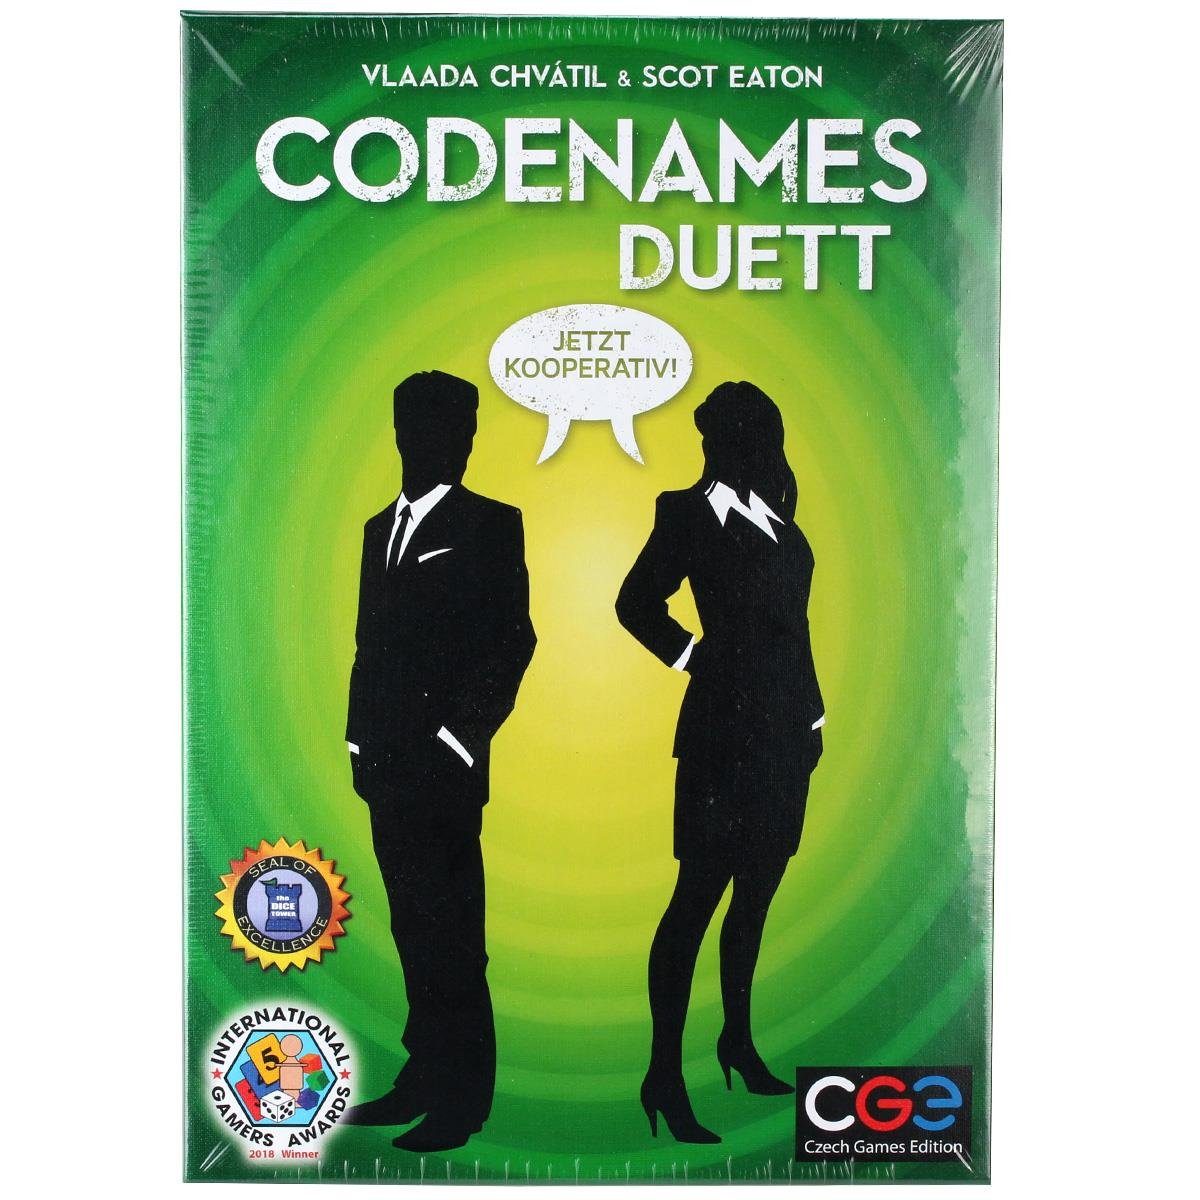 Duett Codenames Spiel, Czech Games Edition